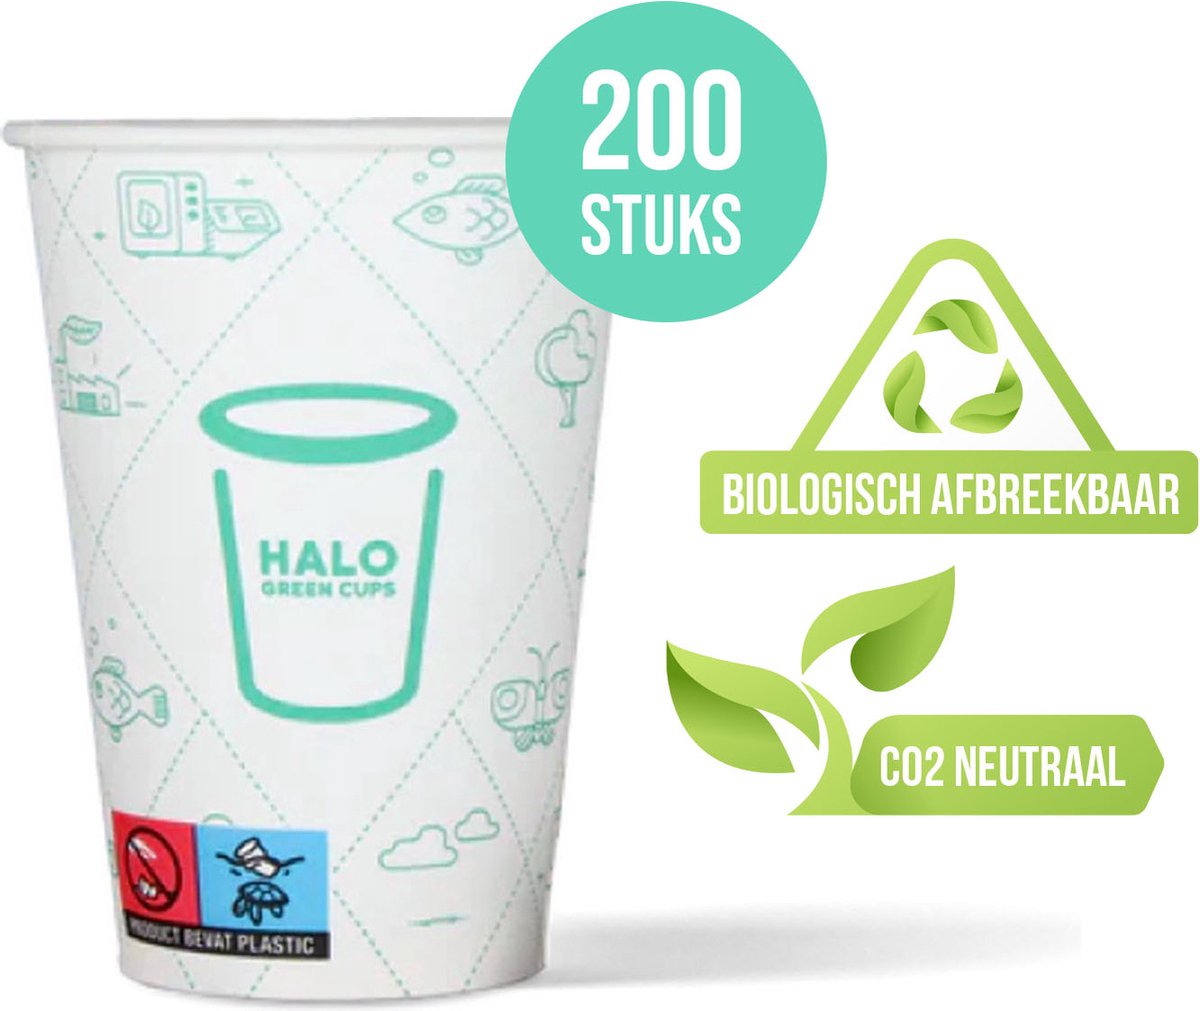 HALO Green Cups Koffiebekers - To Go Bekers - Wegwerp beker - PLA/FSC - 180ml/7.5Z - 200 Stuks